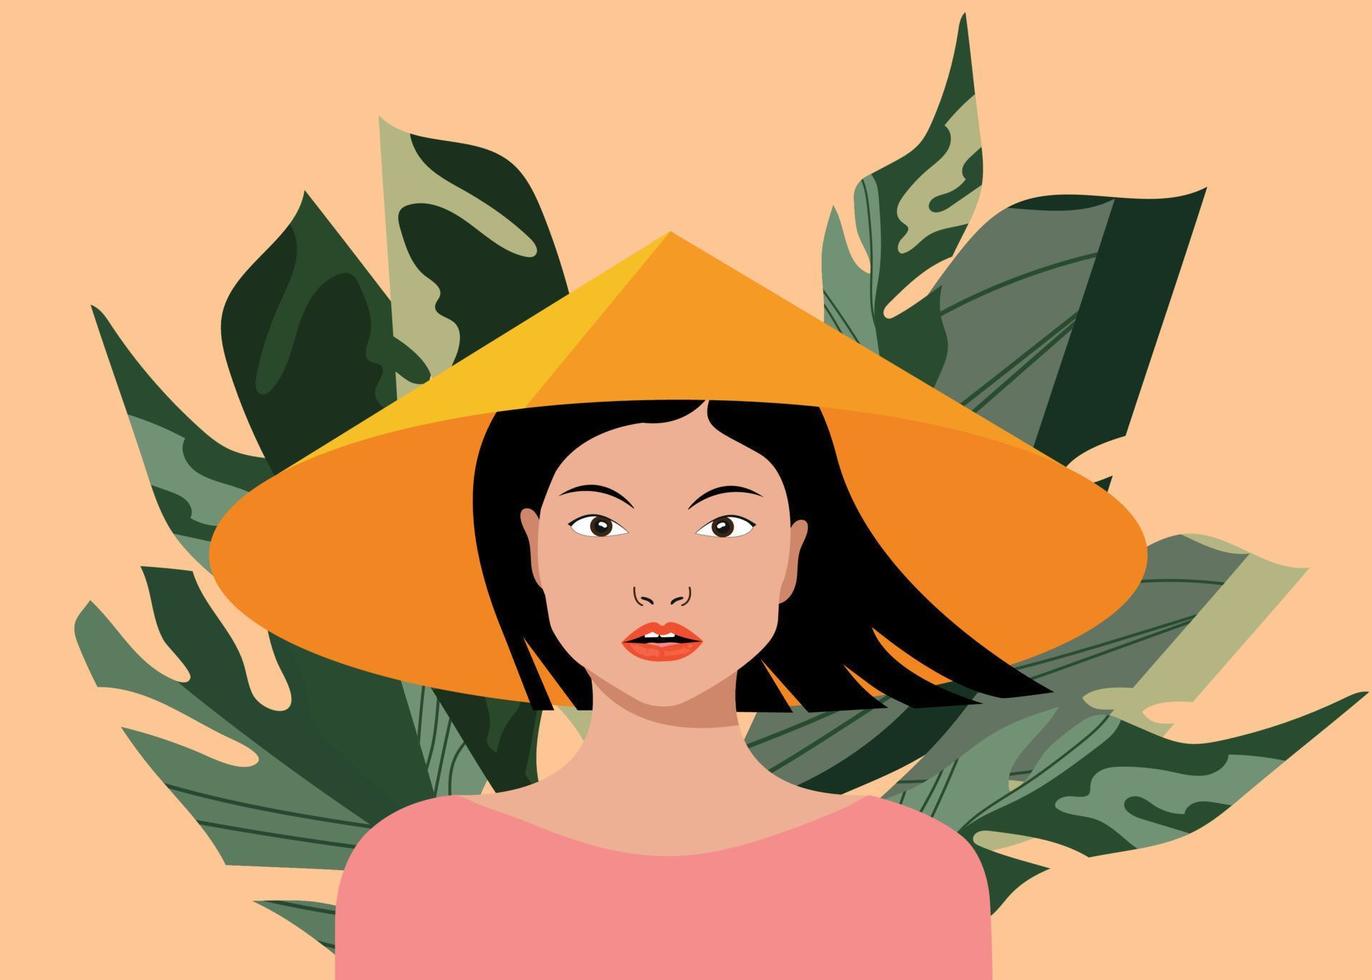 Aziatisch vrouw, traditioneel kostuum, conisch hoed. jong, mooi vrouw, zwart haar. weelderig struikgewas in de achtergrond, banaan palm bladeren. modern vector illustratie.